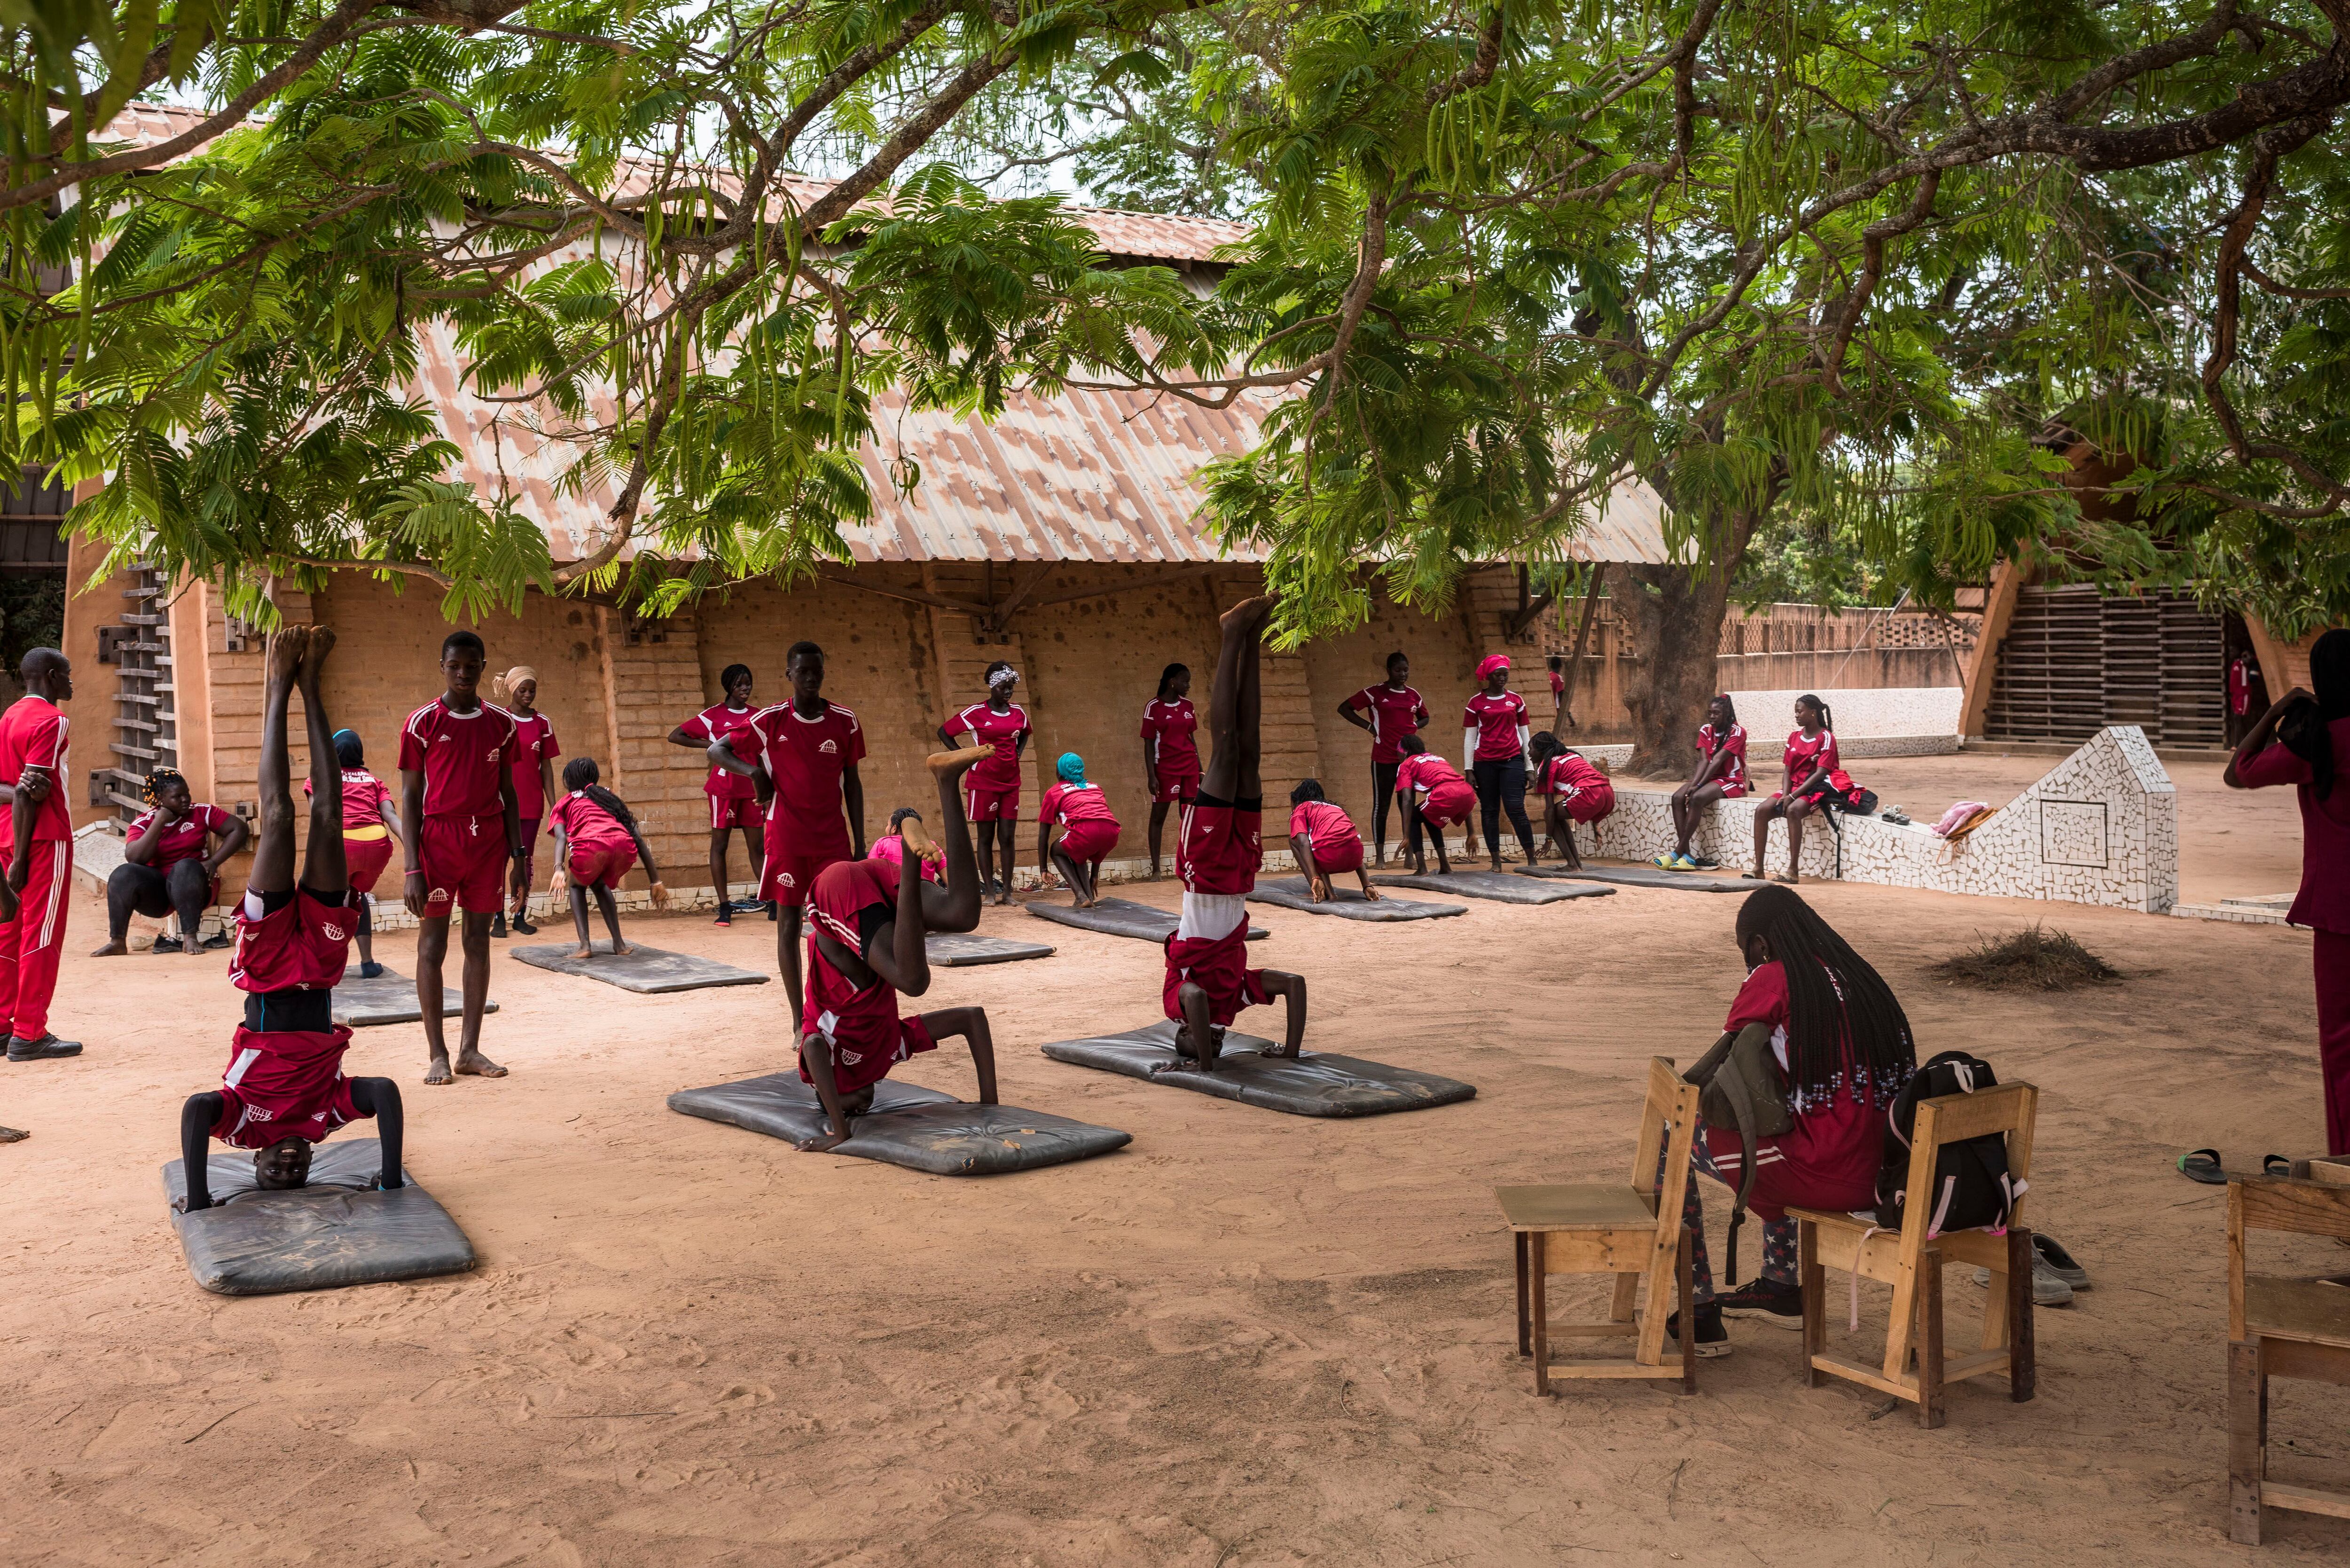 La escuela cuenta con dos campos para la práctica deportiva. En la imagen, varios alumnos hacen gimnasia.